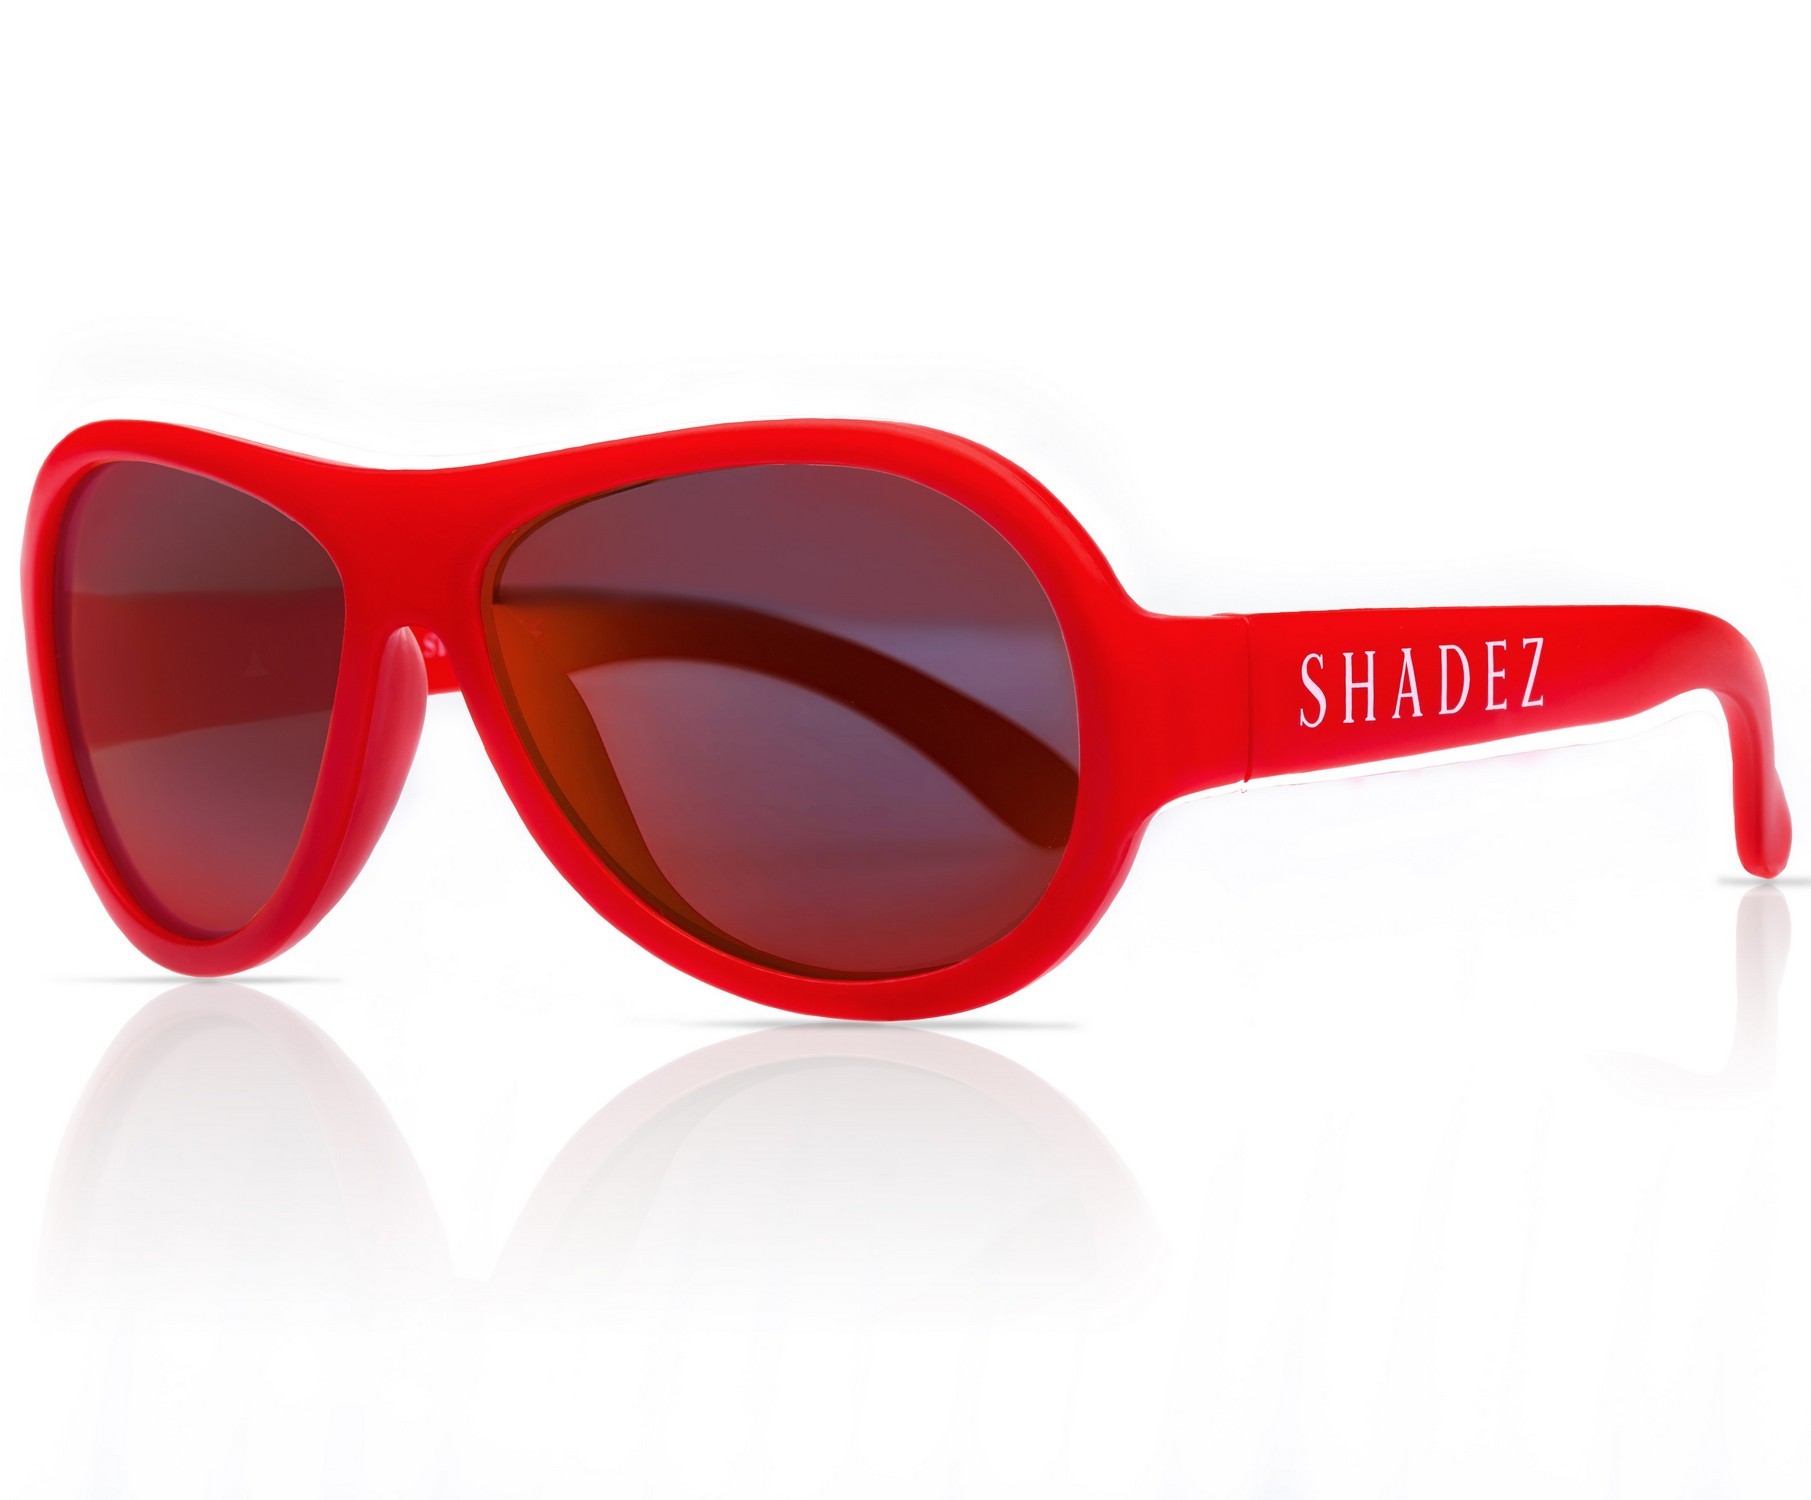 Shadez - UV-Sonnenbrille für Kinder - Classics - Rot